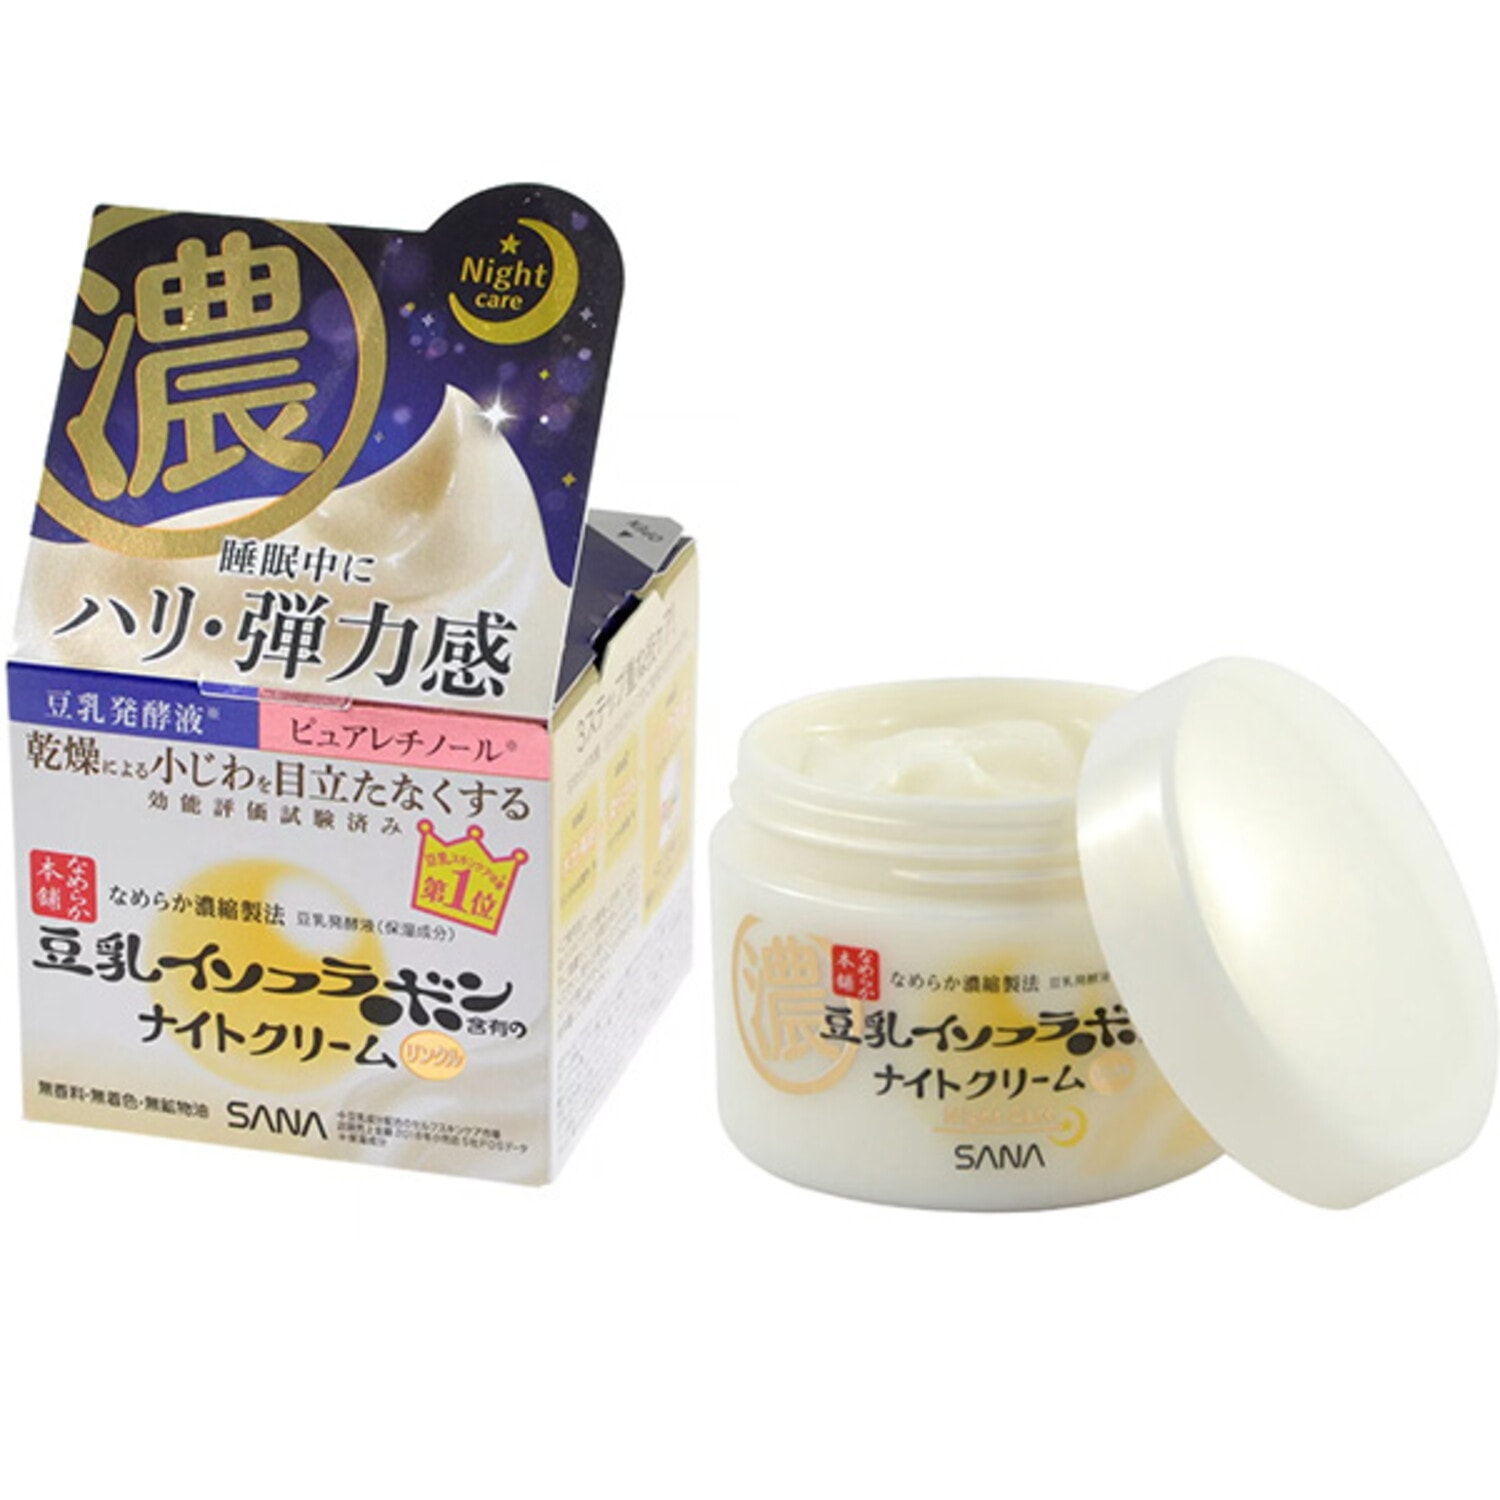 SANA Soy Milk Wrinkle Gel Cream Увлажняющий и подтягивающий ночной крем-гель с ретинолом и изофлавонами сои, 50 г. / 485787 (3Т)